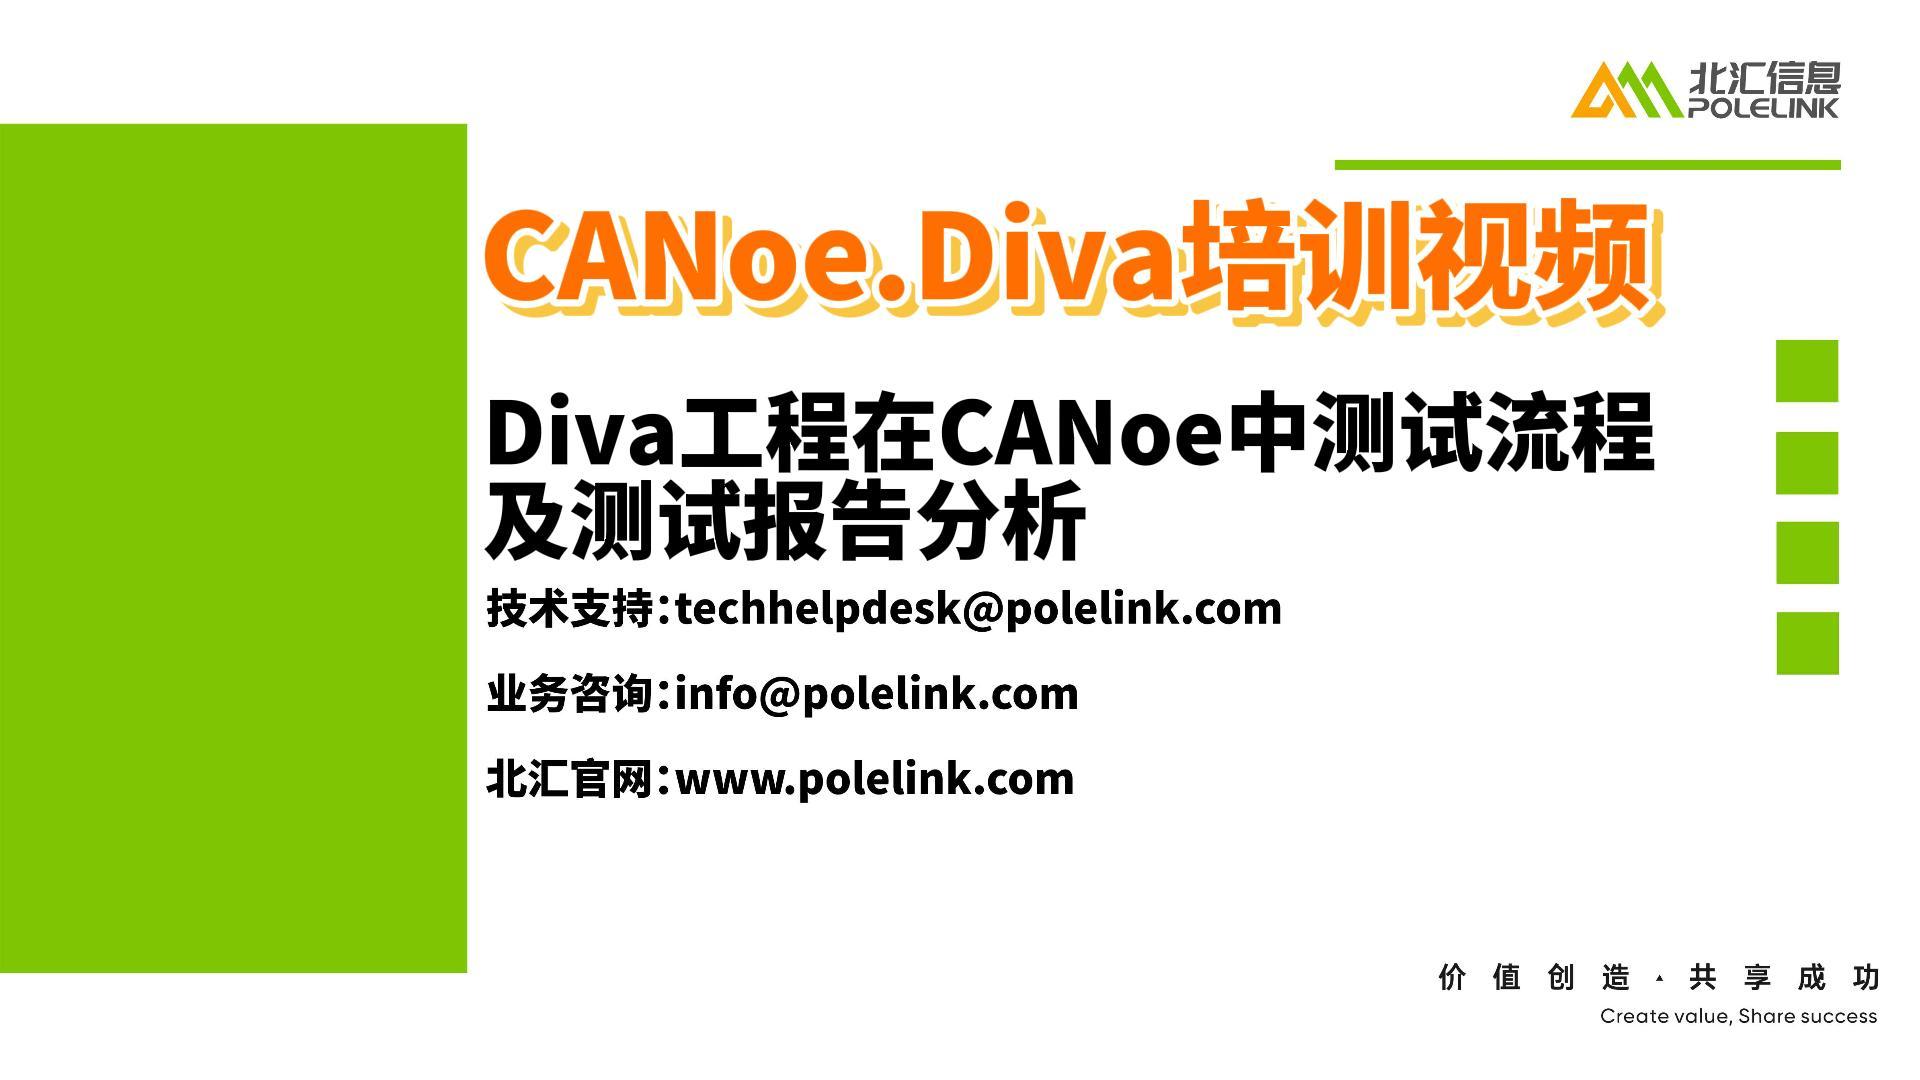 Diva工程在CANoe中的测试流程及测试报告分析#诊断自动化测试 #CANoe
 